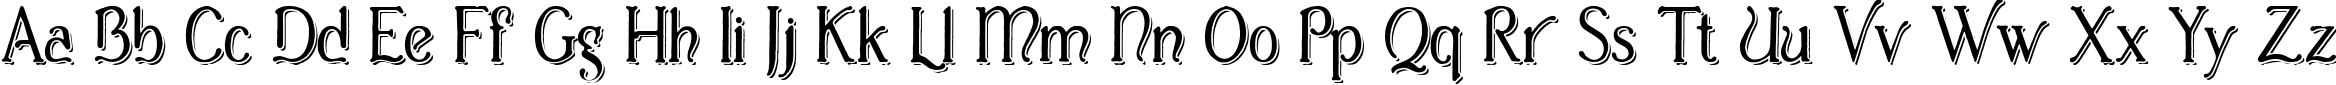 Пример написания английского алфавита шрифтом Casua_Shopsign